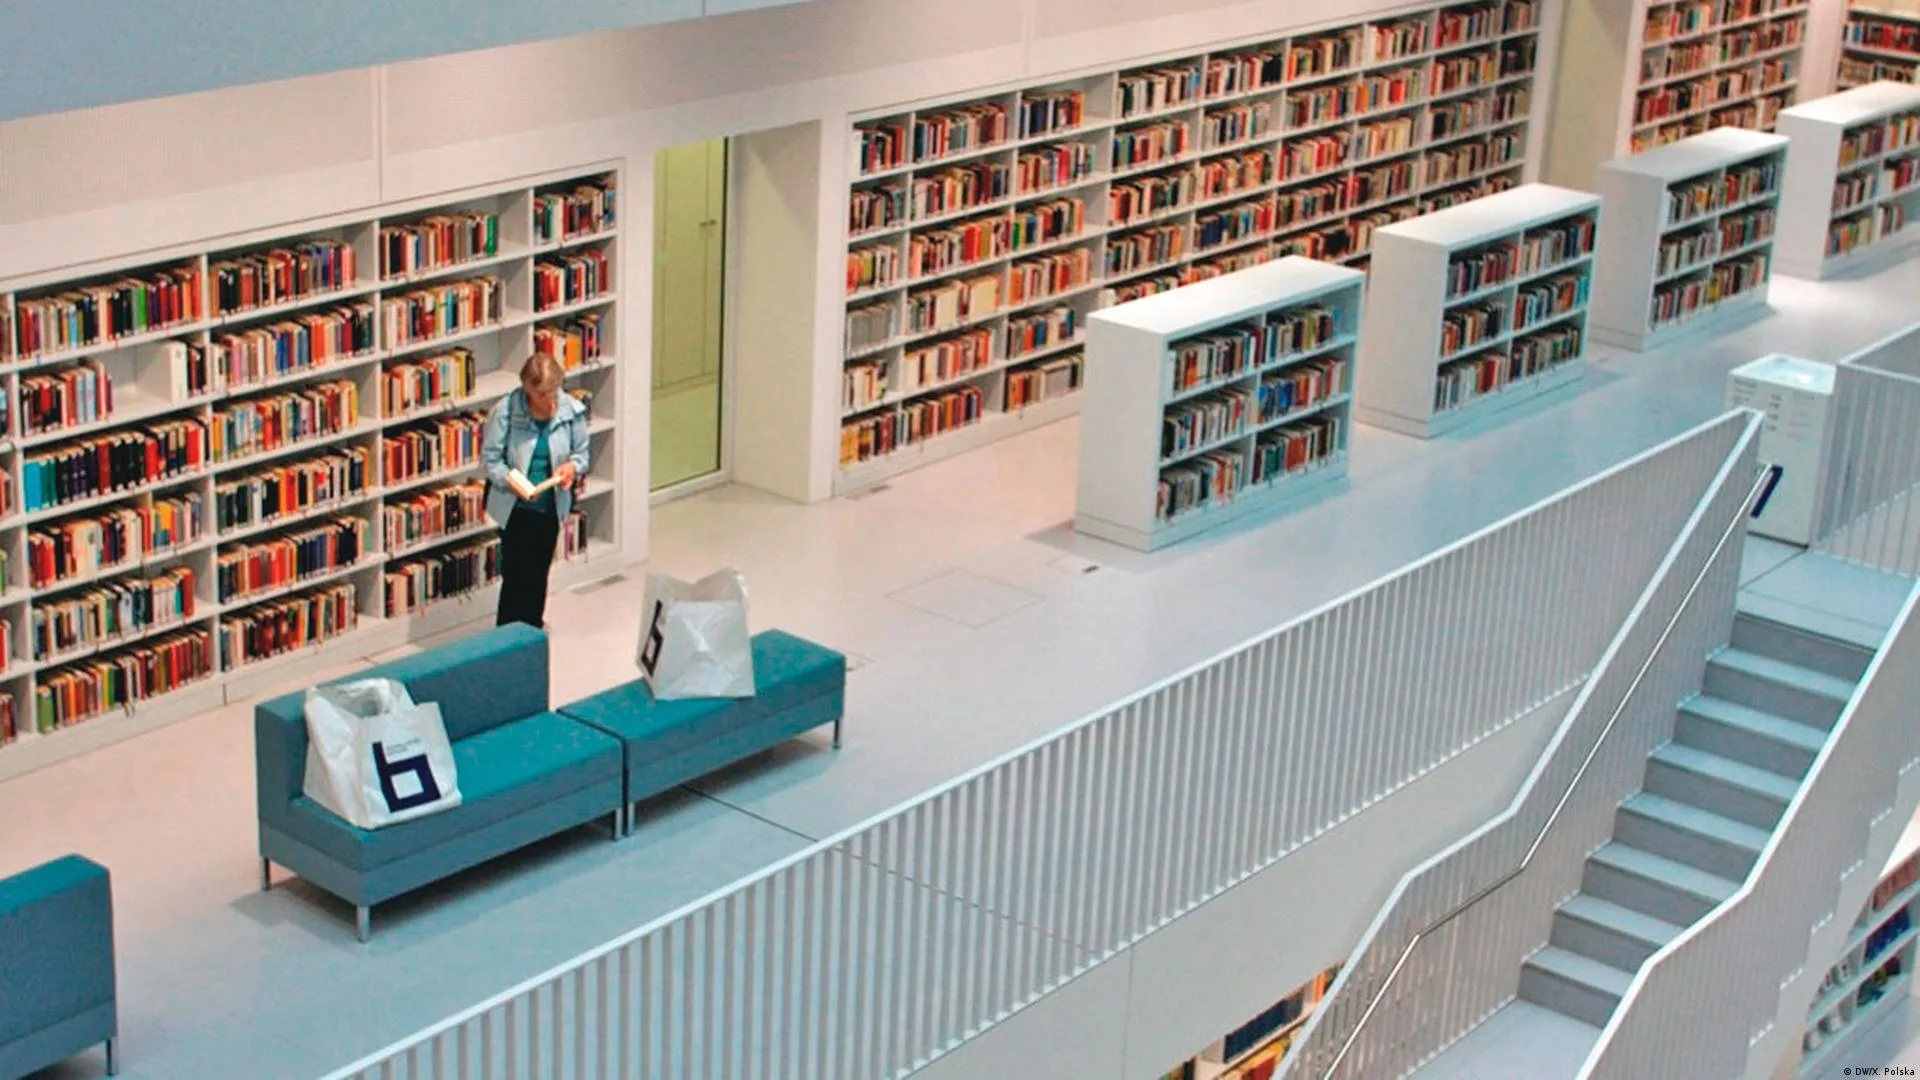 Библиотека 48 2. Городская библиотека Штутгарта. Библиотека в Германии. Библиотека в Штутгарте Германия. Самая фотогеничная библиотека.